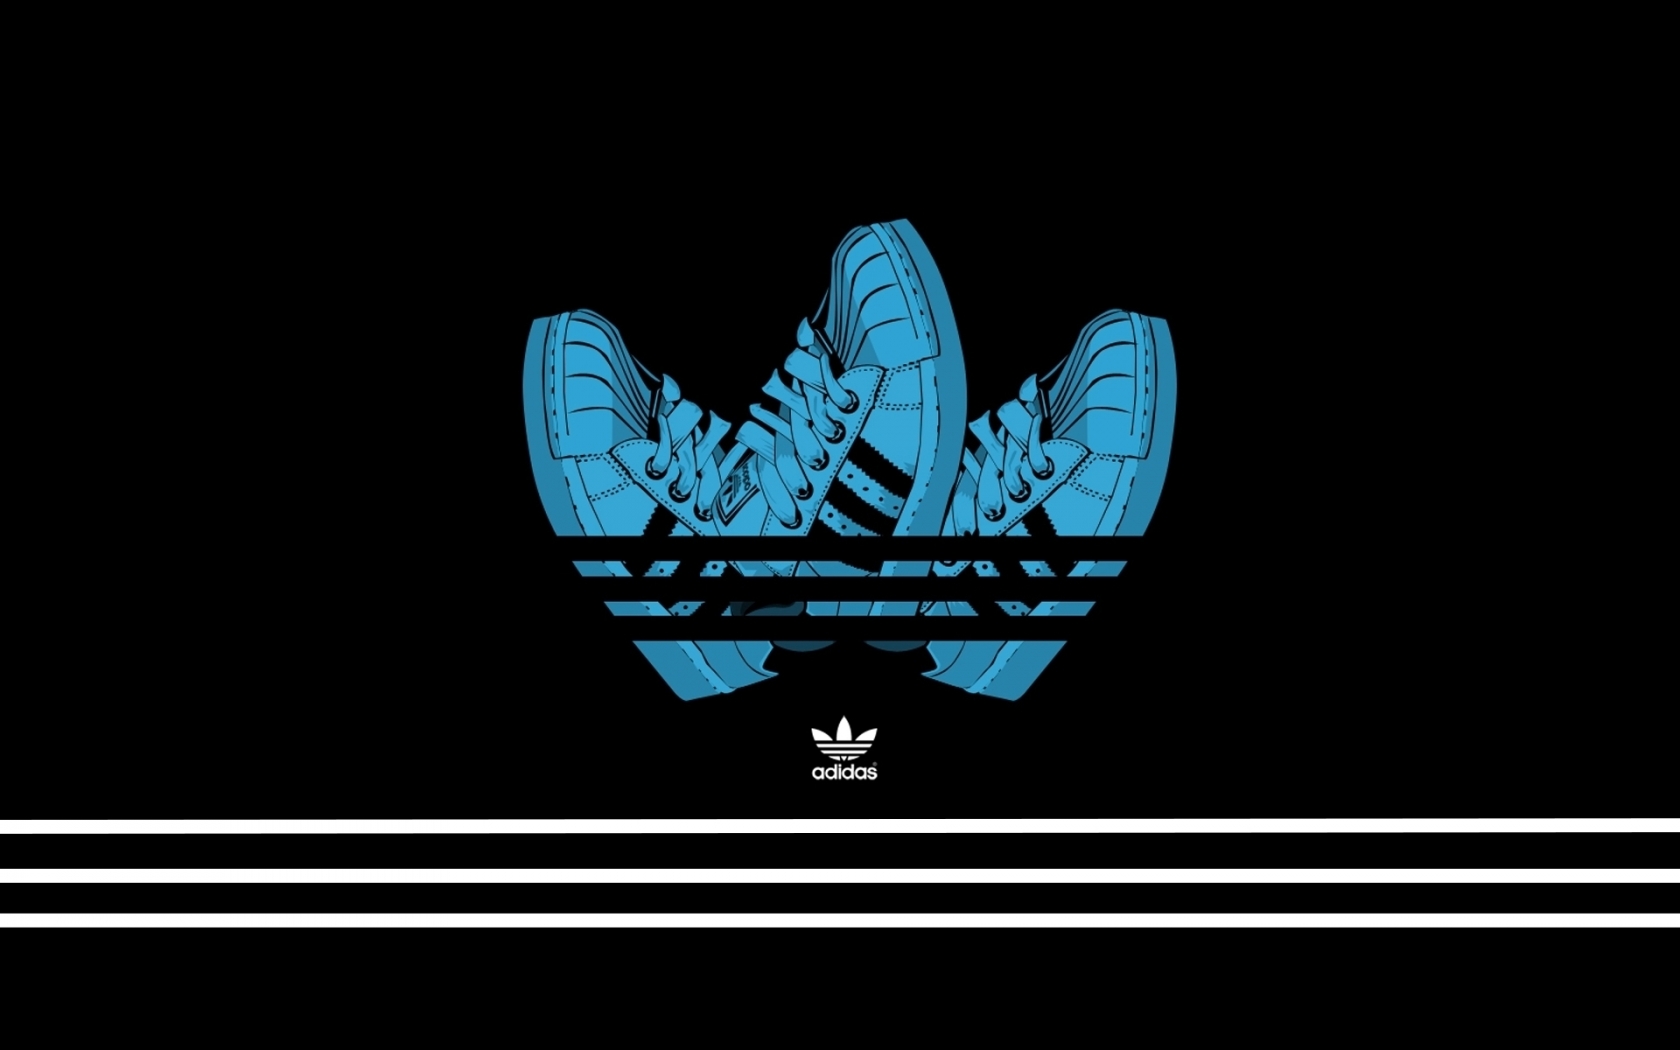 Adidas Creative Logo Design for 1680 x 1050 widescreen resolution